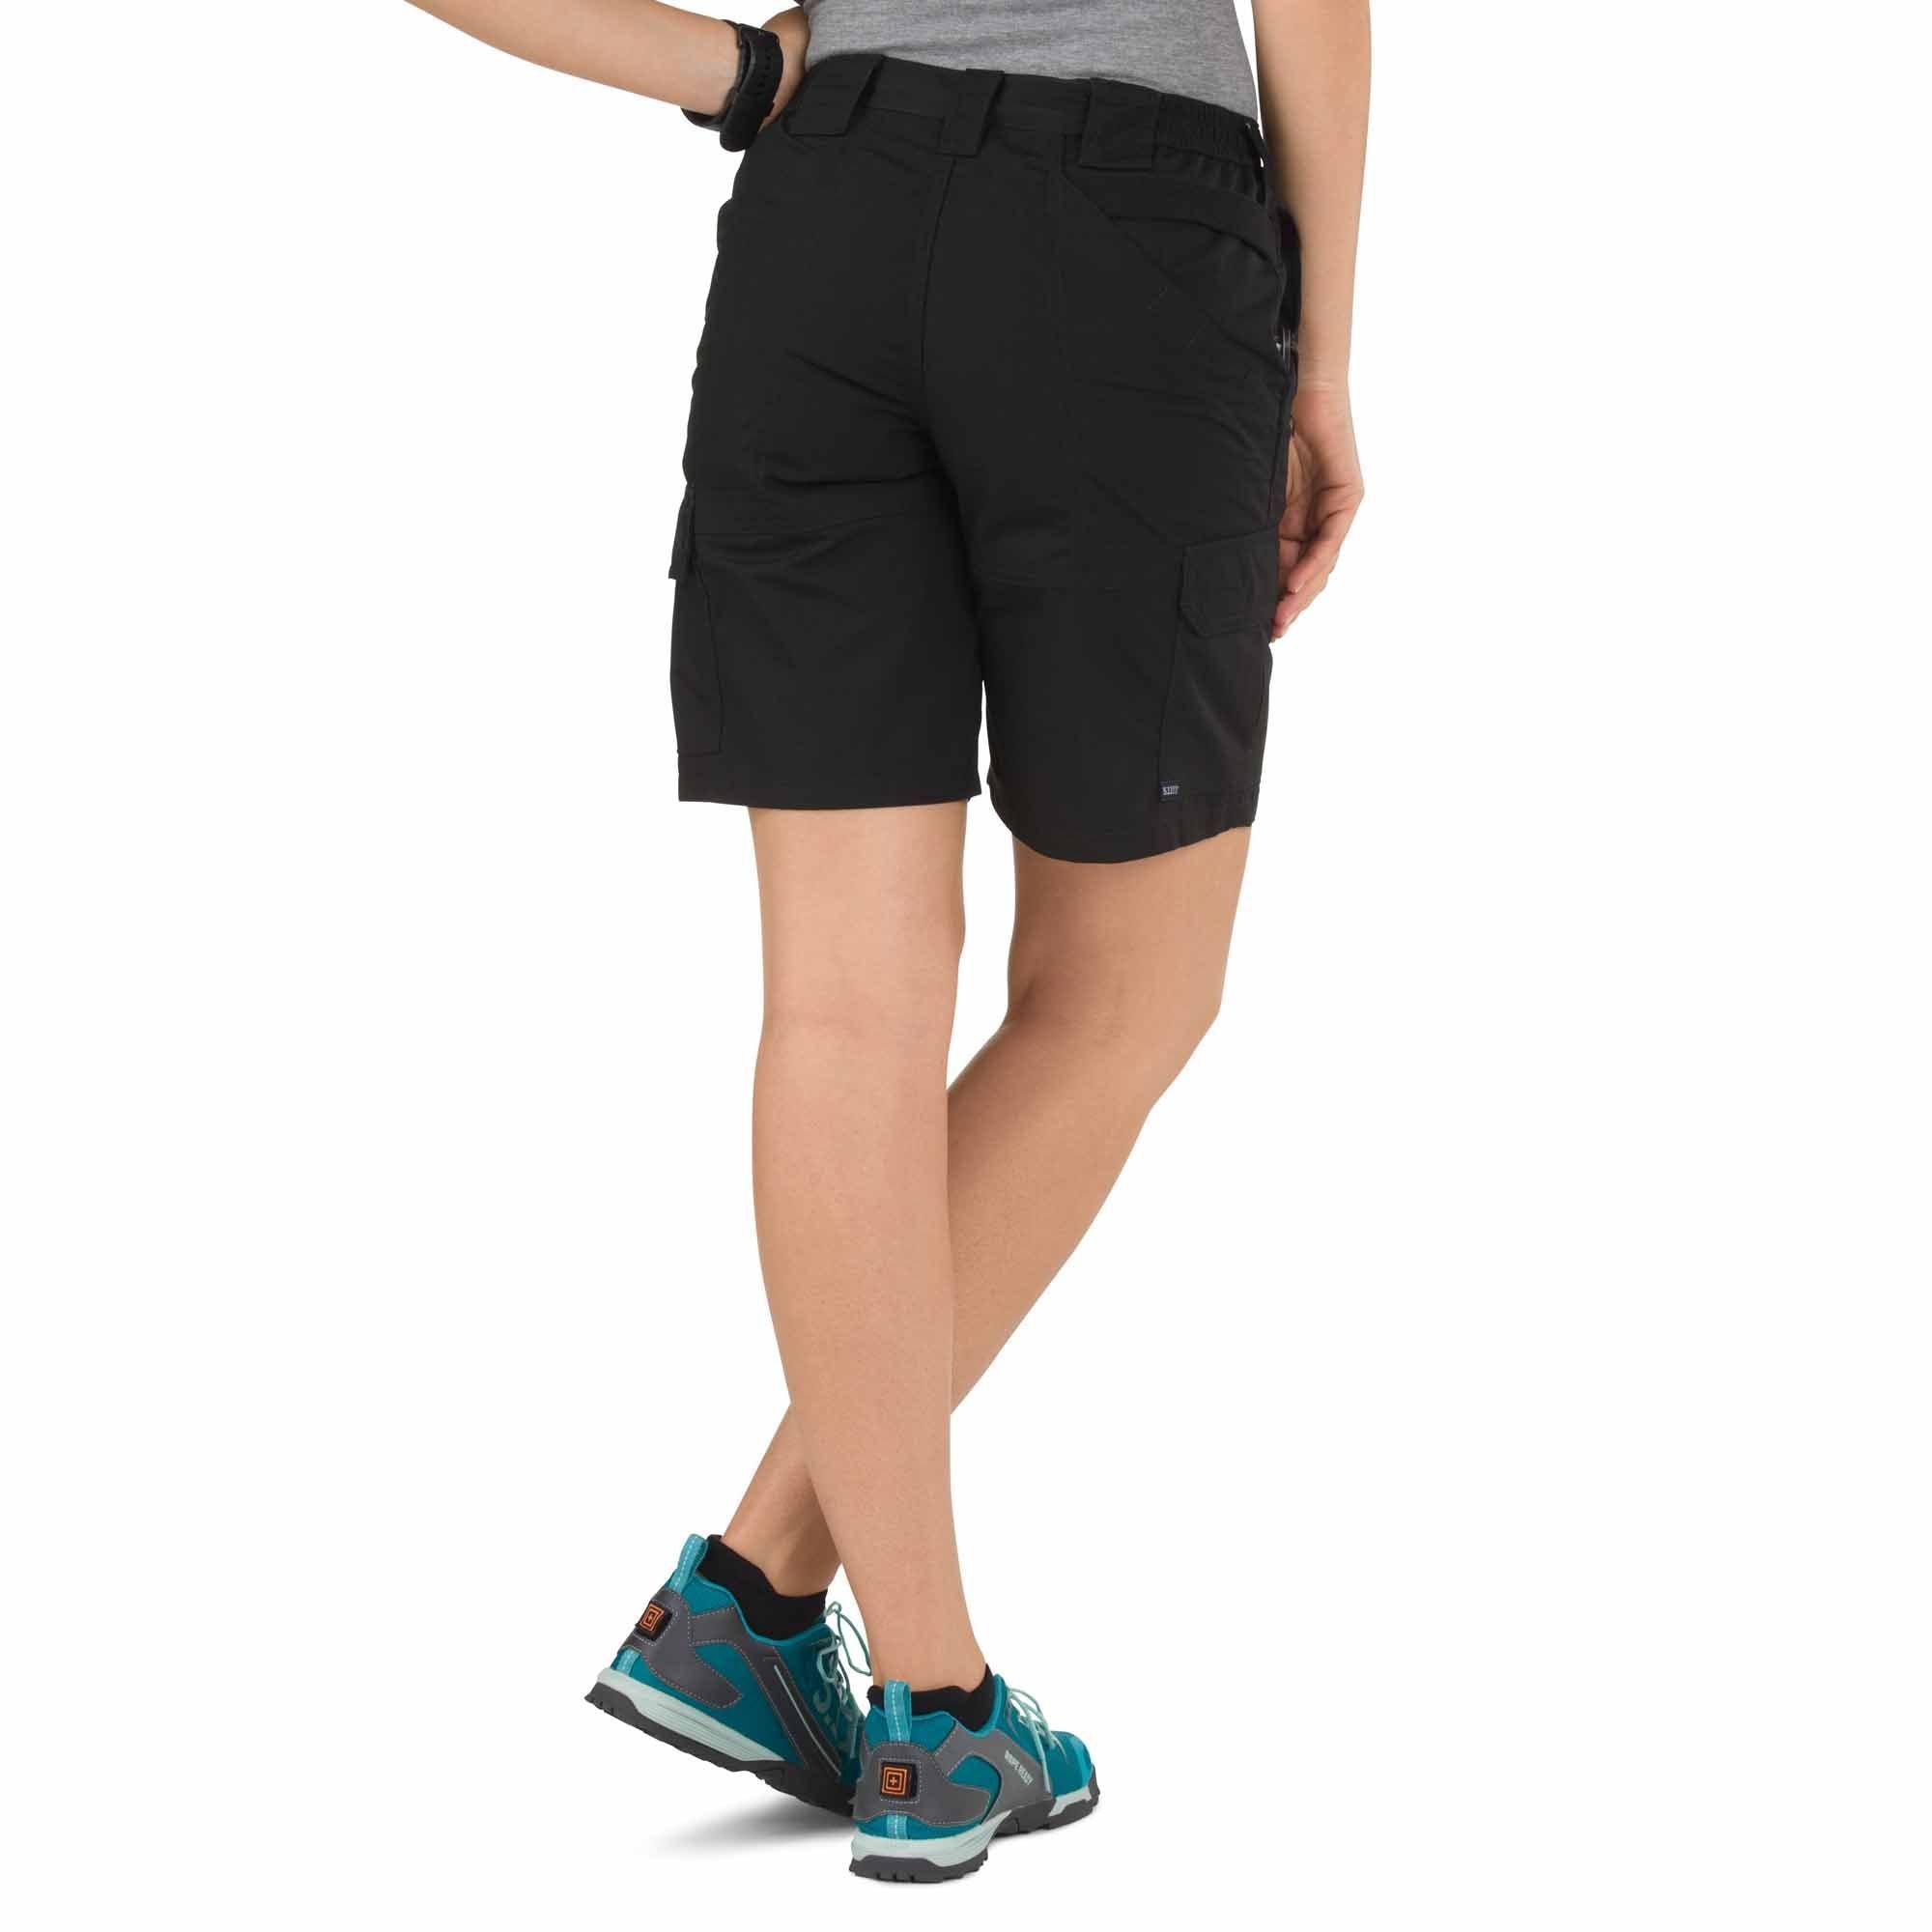 5.11 Women's Tactite Pro Shorts Shorts 5.11 Tactical Black 2 Tactical Gear Supplier Tactical Distributors Australia